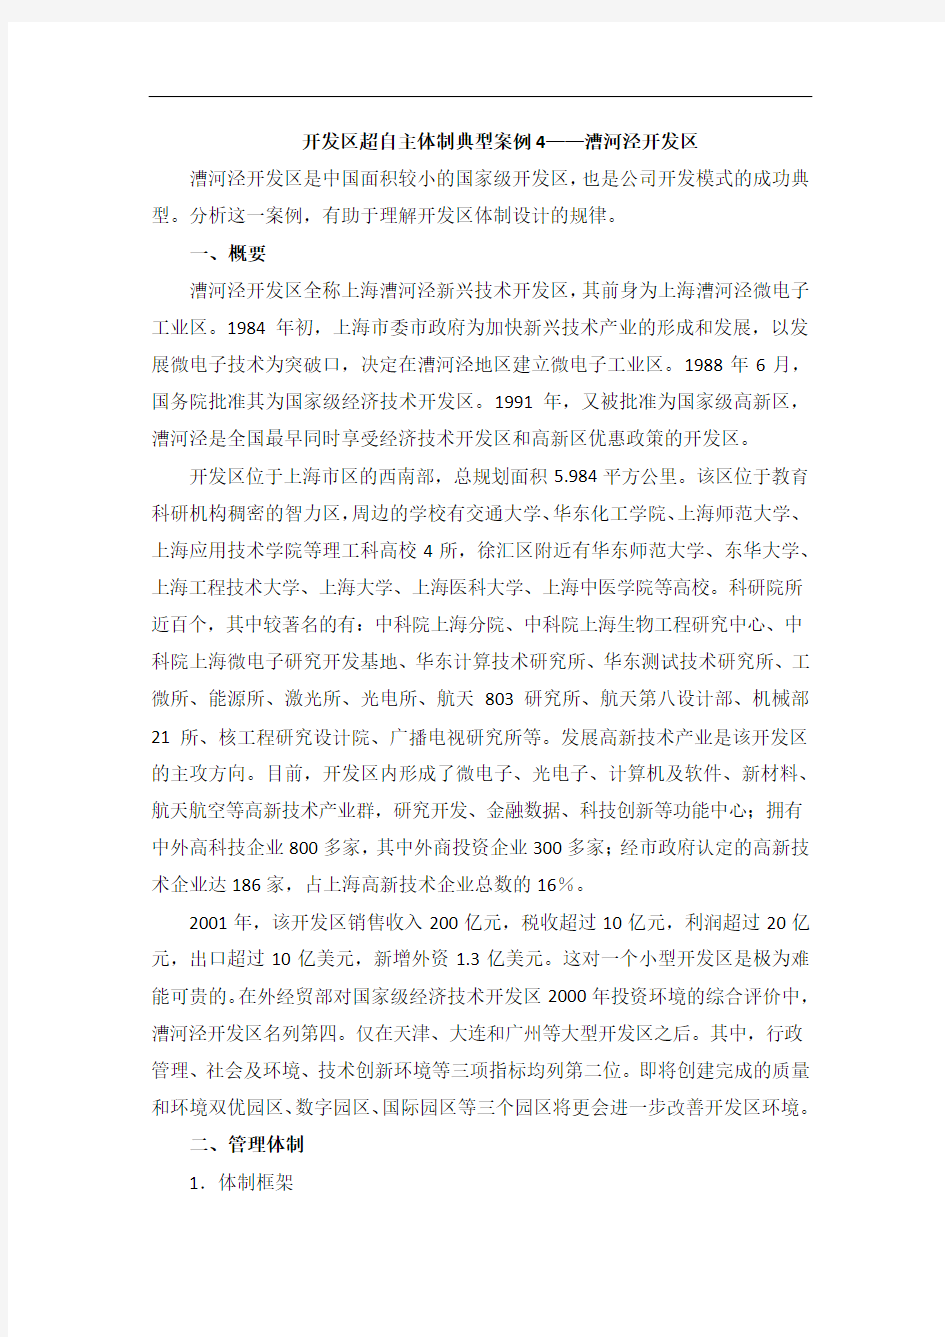 开发区超自主体制典型案例4——上海漕河泾开发区